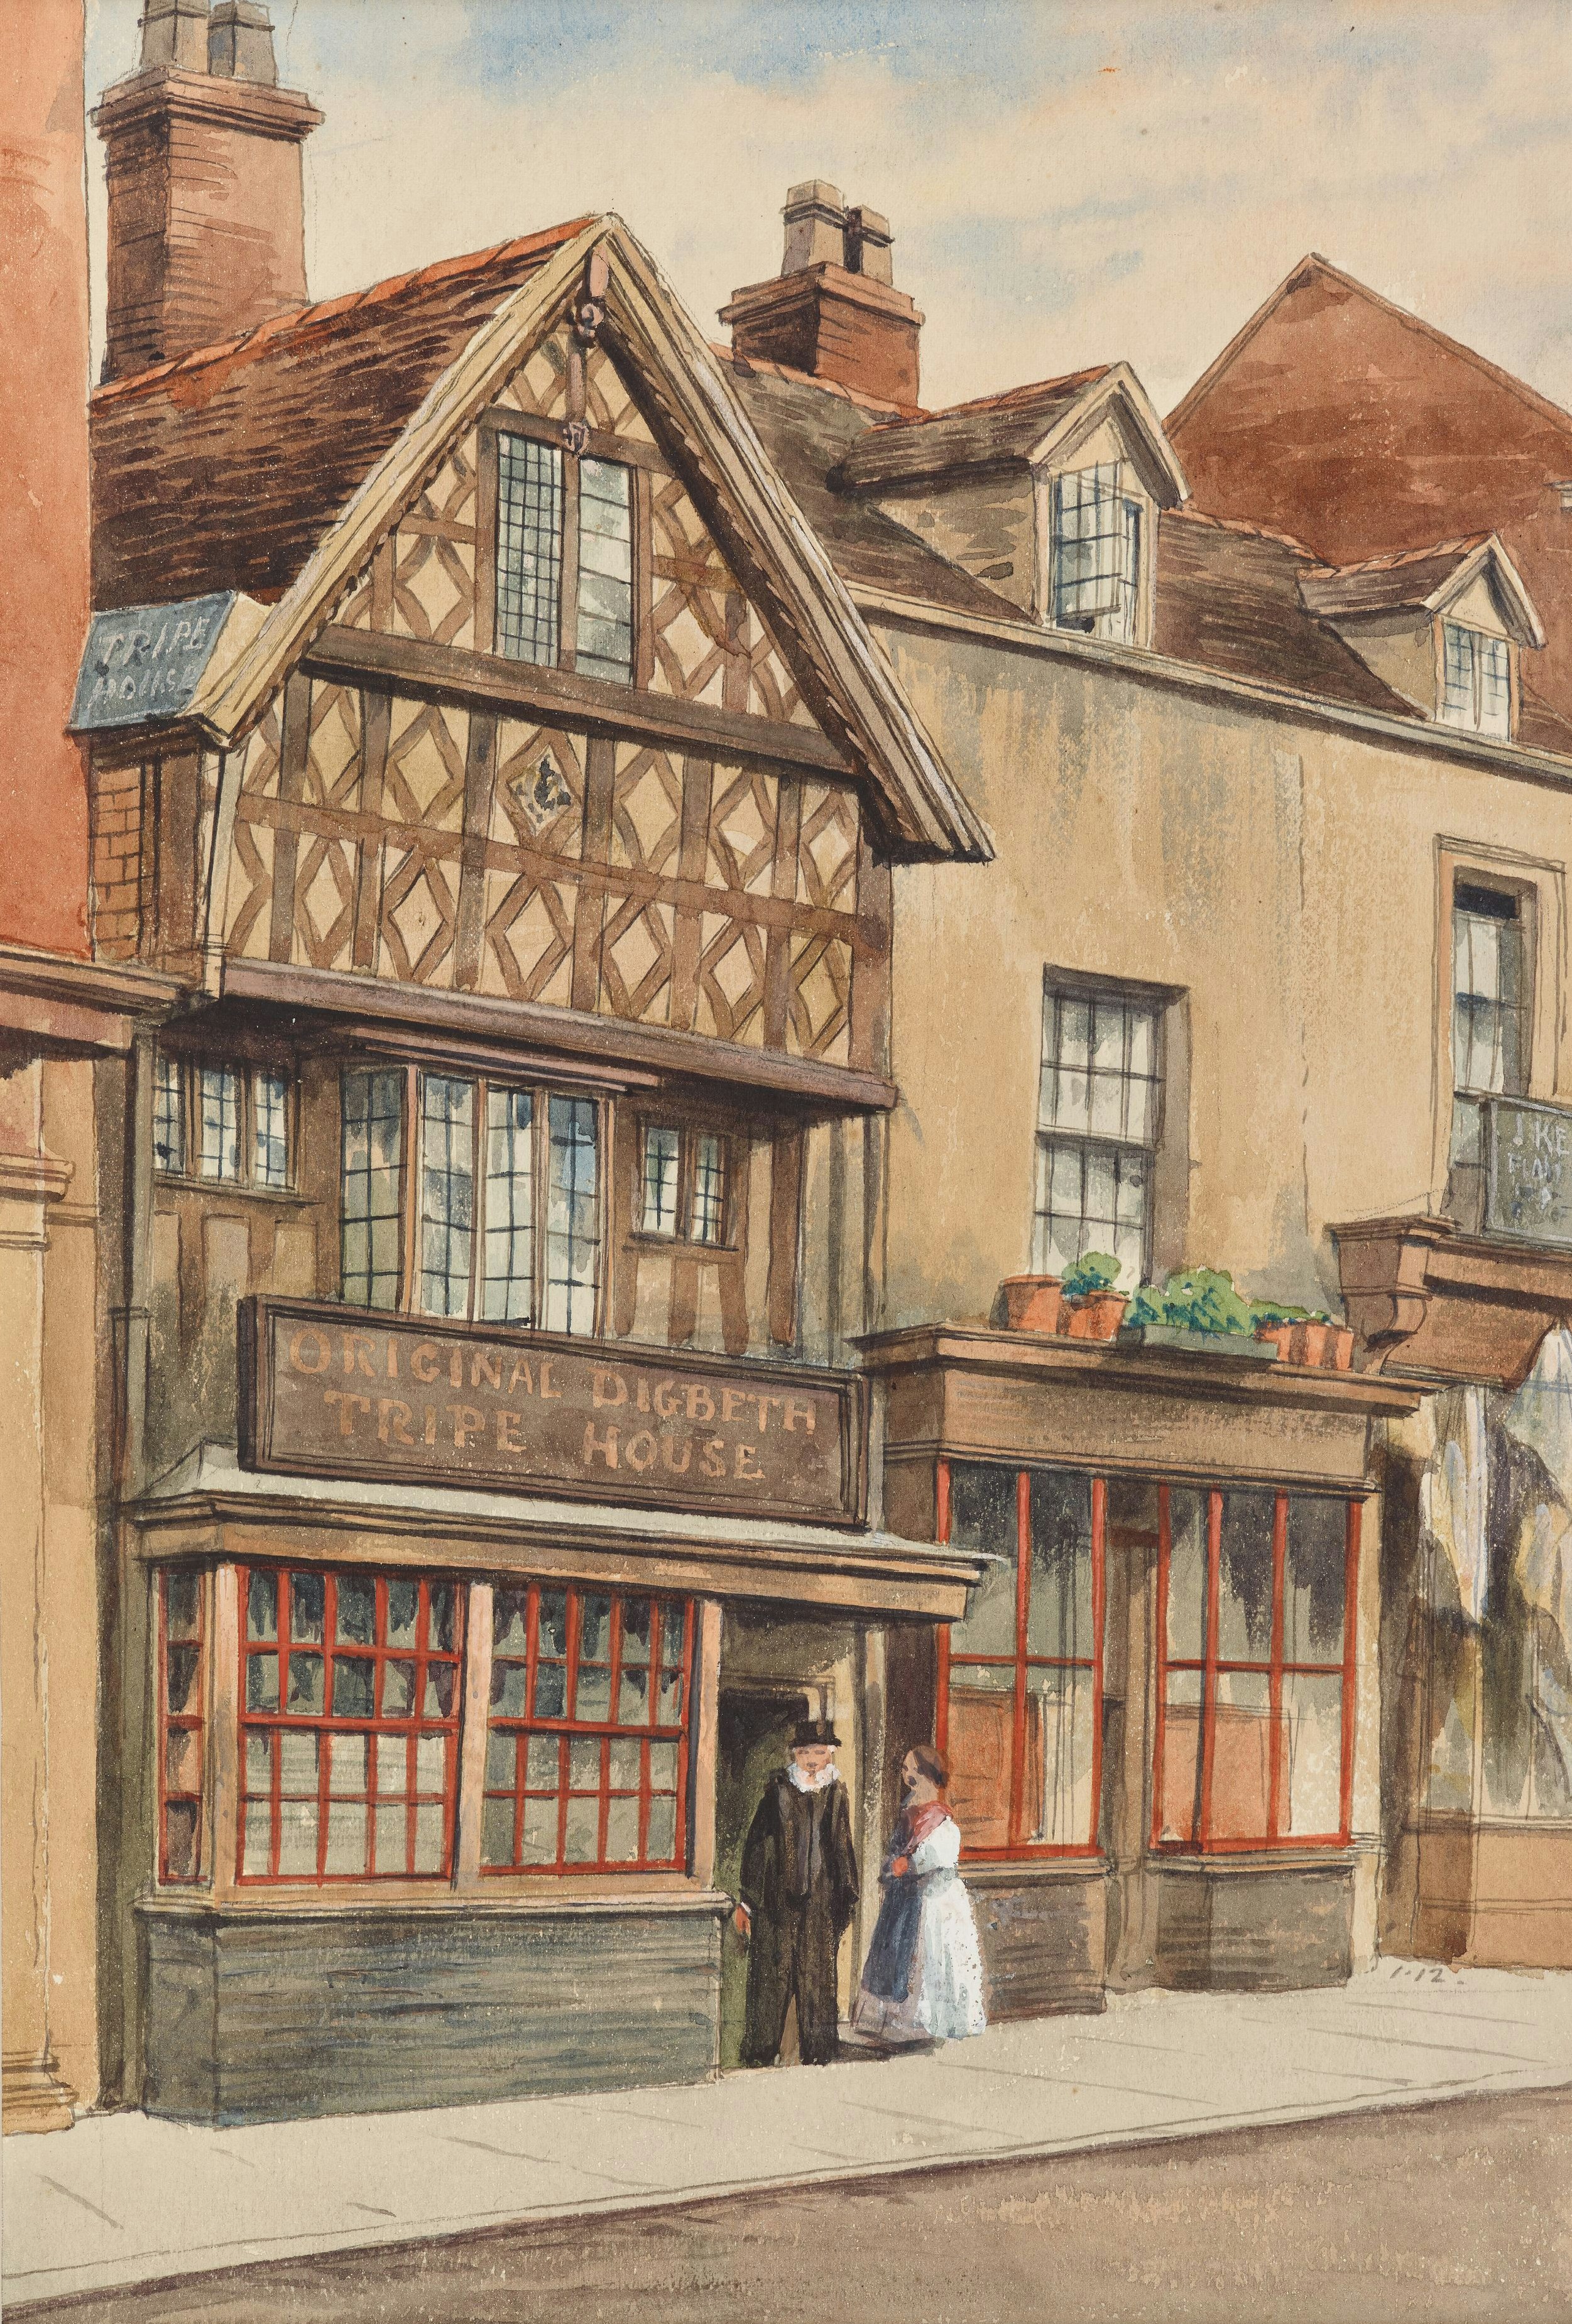 Original Digbeth Tripe House, Birmingham. By Allen Edward Everitt (1824-1882) * View of Well Street, Digbeth, Birmingham